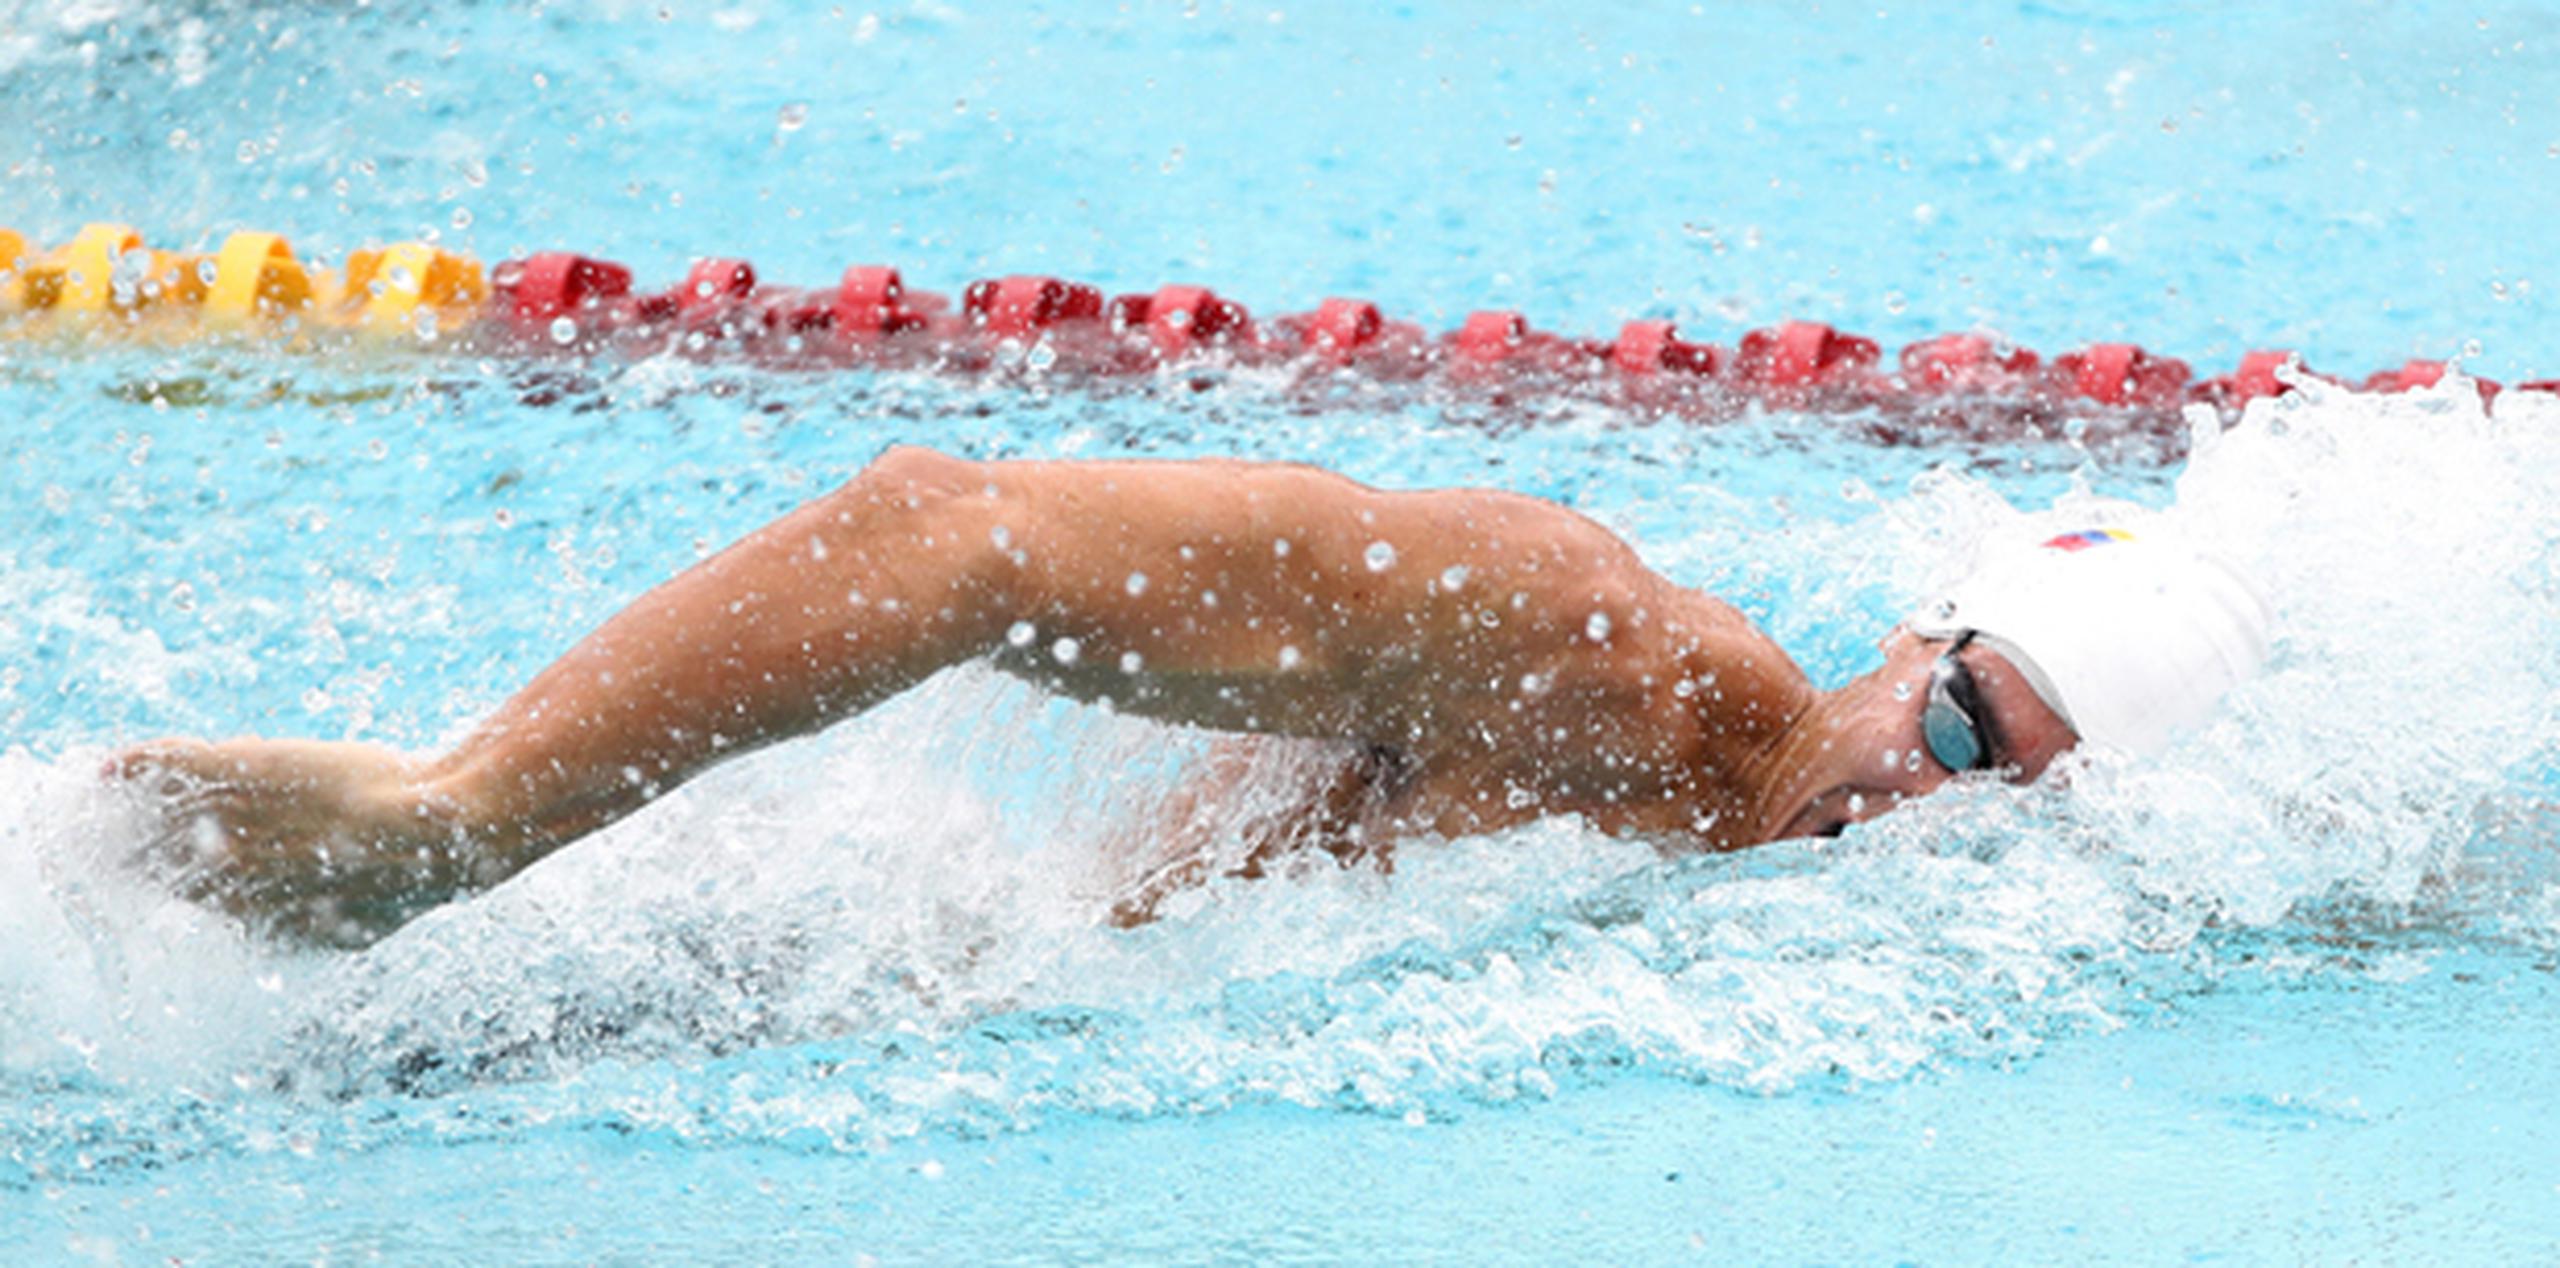 La competencia de natación se celebra en la piscina del Centro Leyes de Reforma de Veracruz. En la foto el nadador venezolano Cristian Quintero. (EFE)